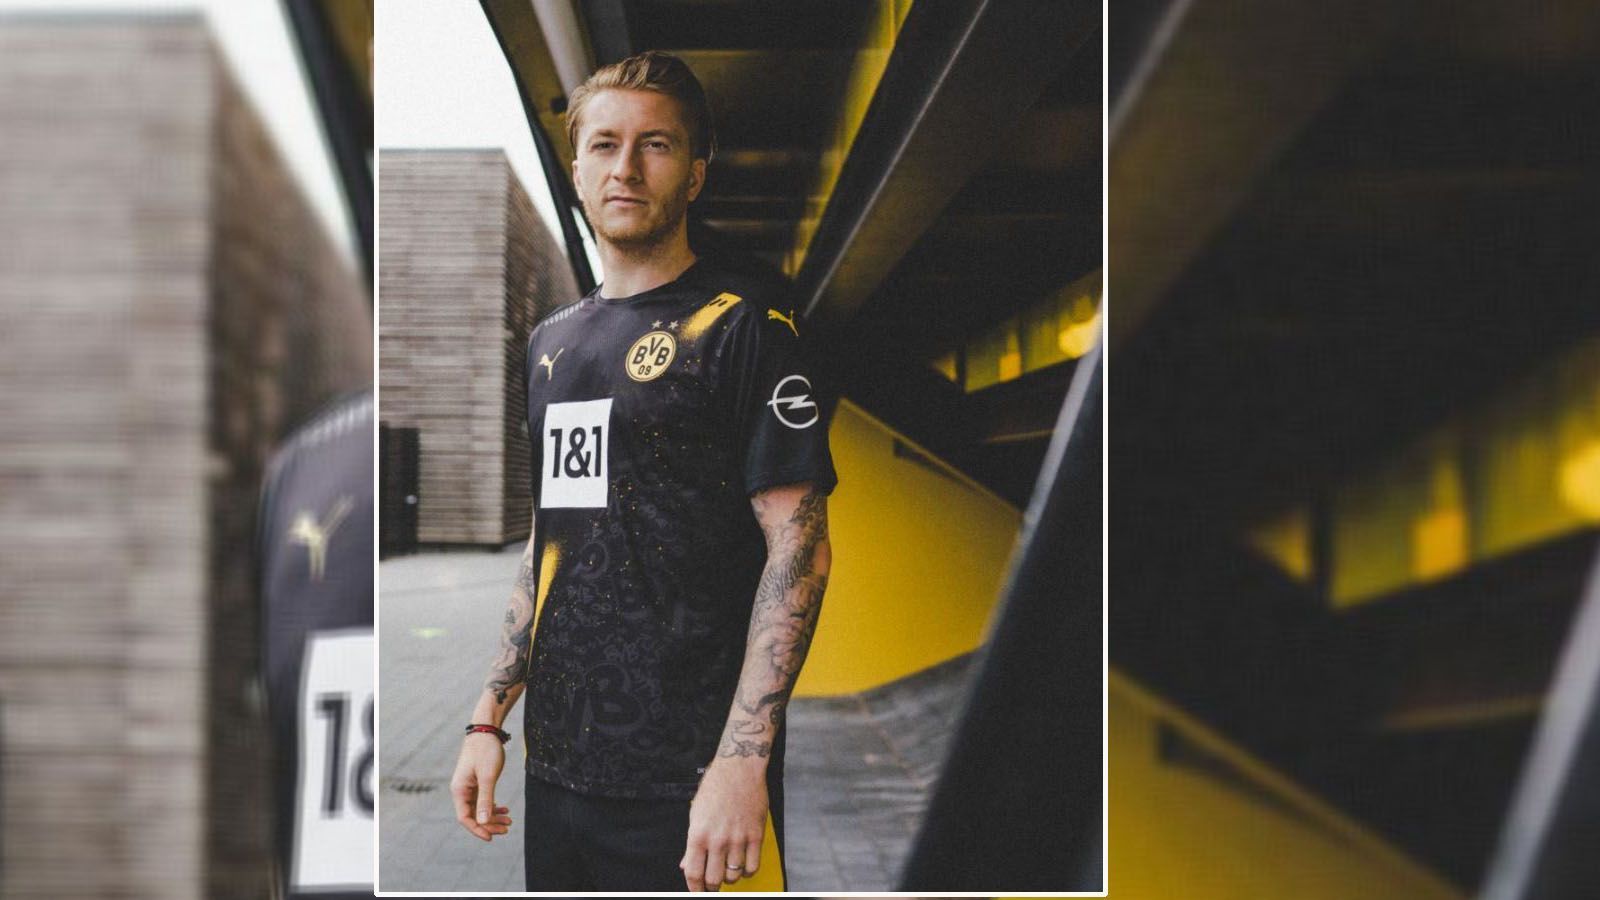 
                <strong>Borussia Dortmund (Auswärtstrikot Bundesliga 2020/21)</strong><br>
                Borussia Dortmund hat nun auch sein Auswärtstrikot für die kommende Bundesliga-Saison präsentiert. Hierbei dominiert die Farbe schwarz. Schräg über das Trikot geht ein gelber Streifen. Während die davon getrennte rechte Seite (aus Spielersicht) abgesehen vom gelben Puma-Logo komplett schwarz ist, finden sich auf der linken Seite mehrere BVB-Schriftzüge. So finden sich dabei bekannte Graffiti-Motive der Stadt wieder und es soll eine Hommage an die Fankultur sein. Anders als im internationalen Wettbewerb werden die Dortmunder in der Bundesliga mit dem Logo des Internetanbieters "1&1" auf der Brust auflaufen.
              